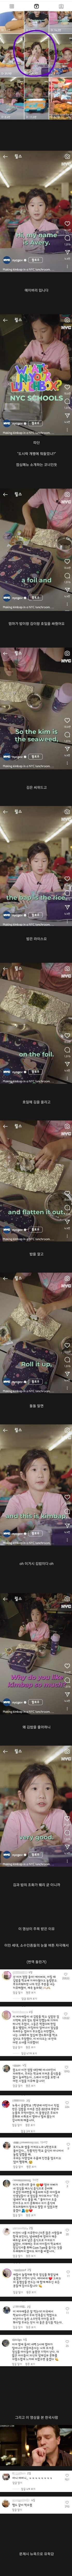 뉴욕시 공식 인스타서 조회수 폭발한 영상 feat.김밥